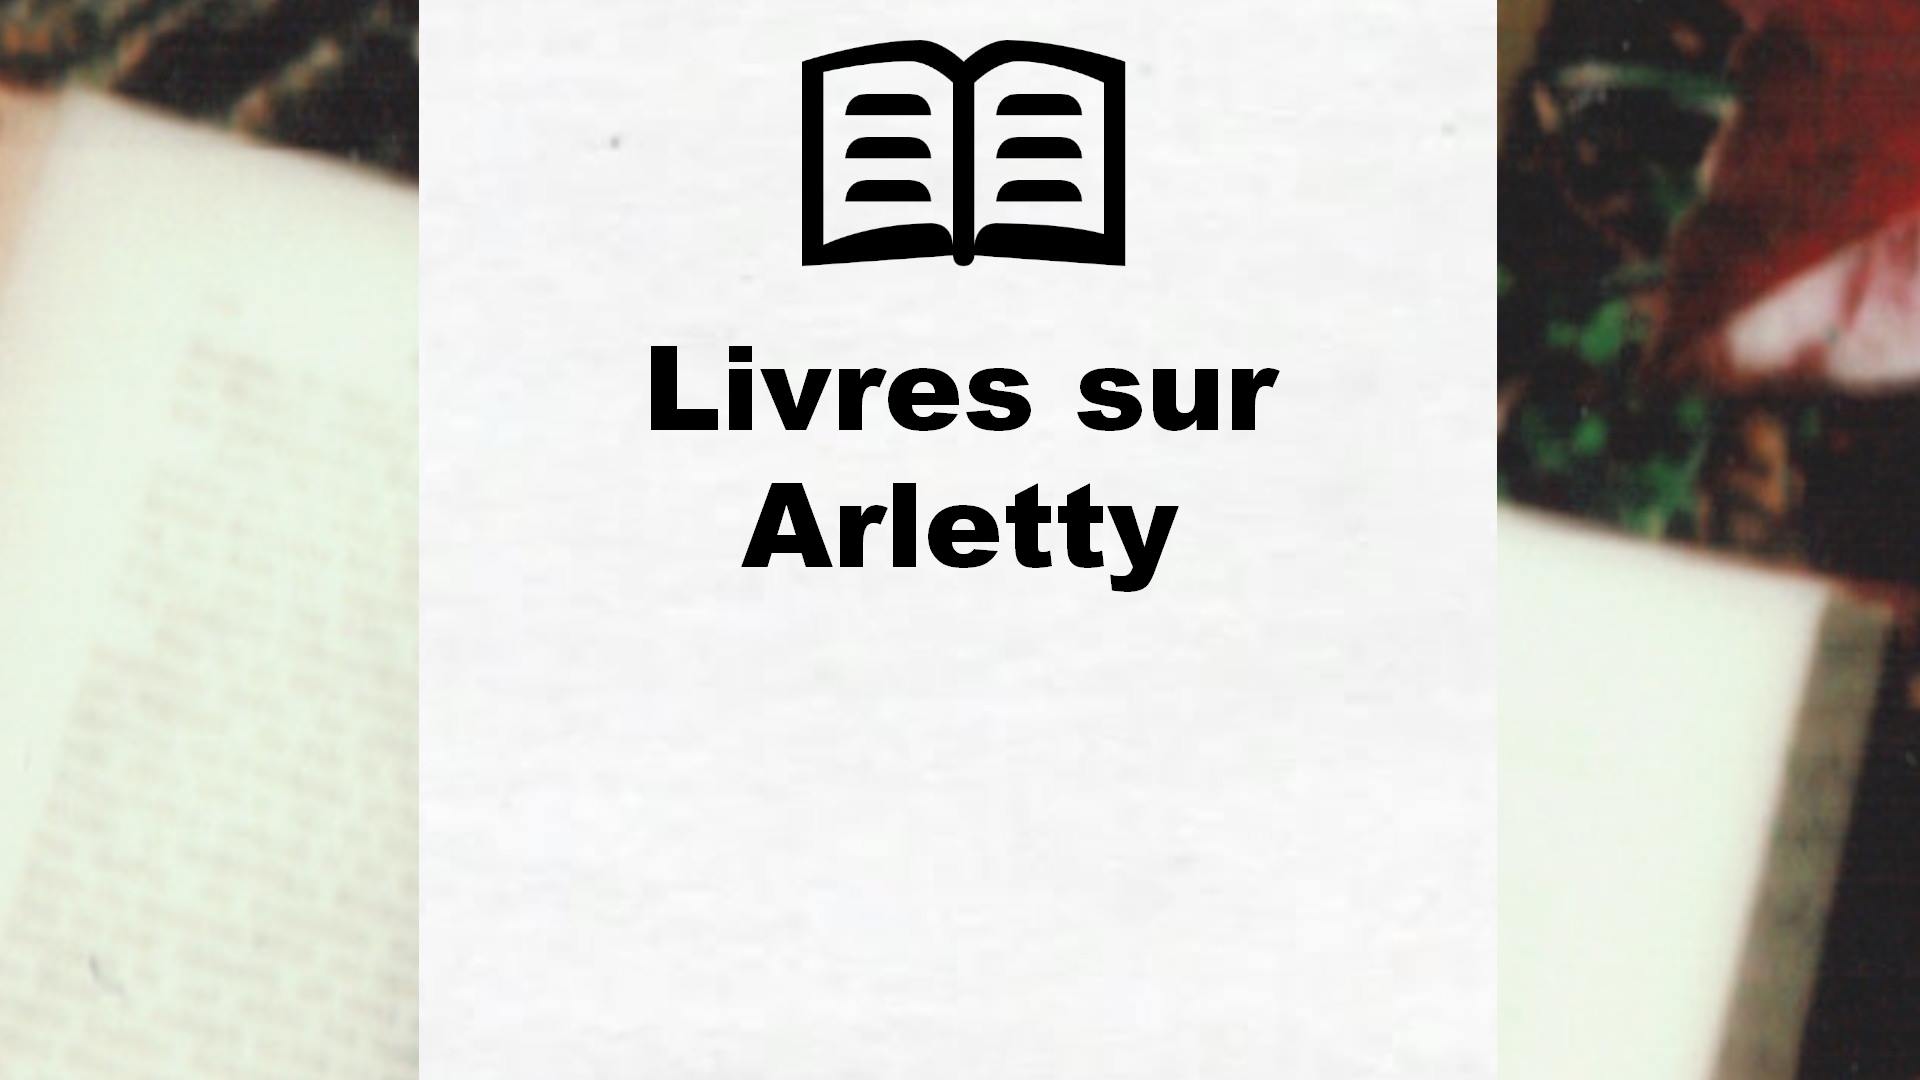 Livres sur Arletty